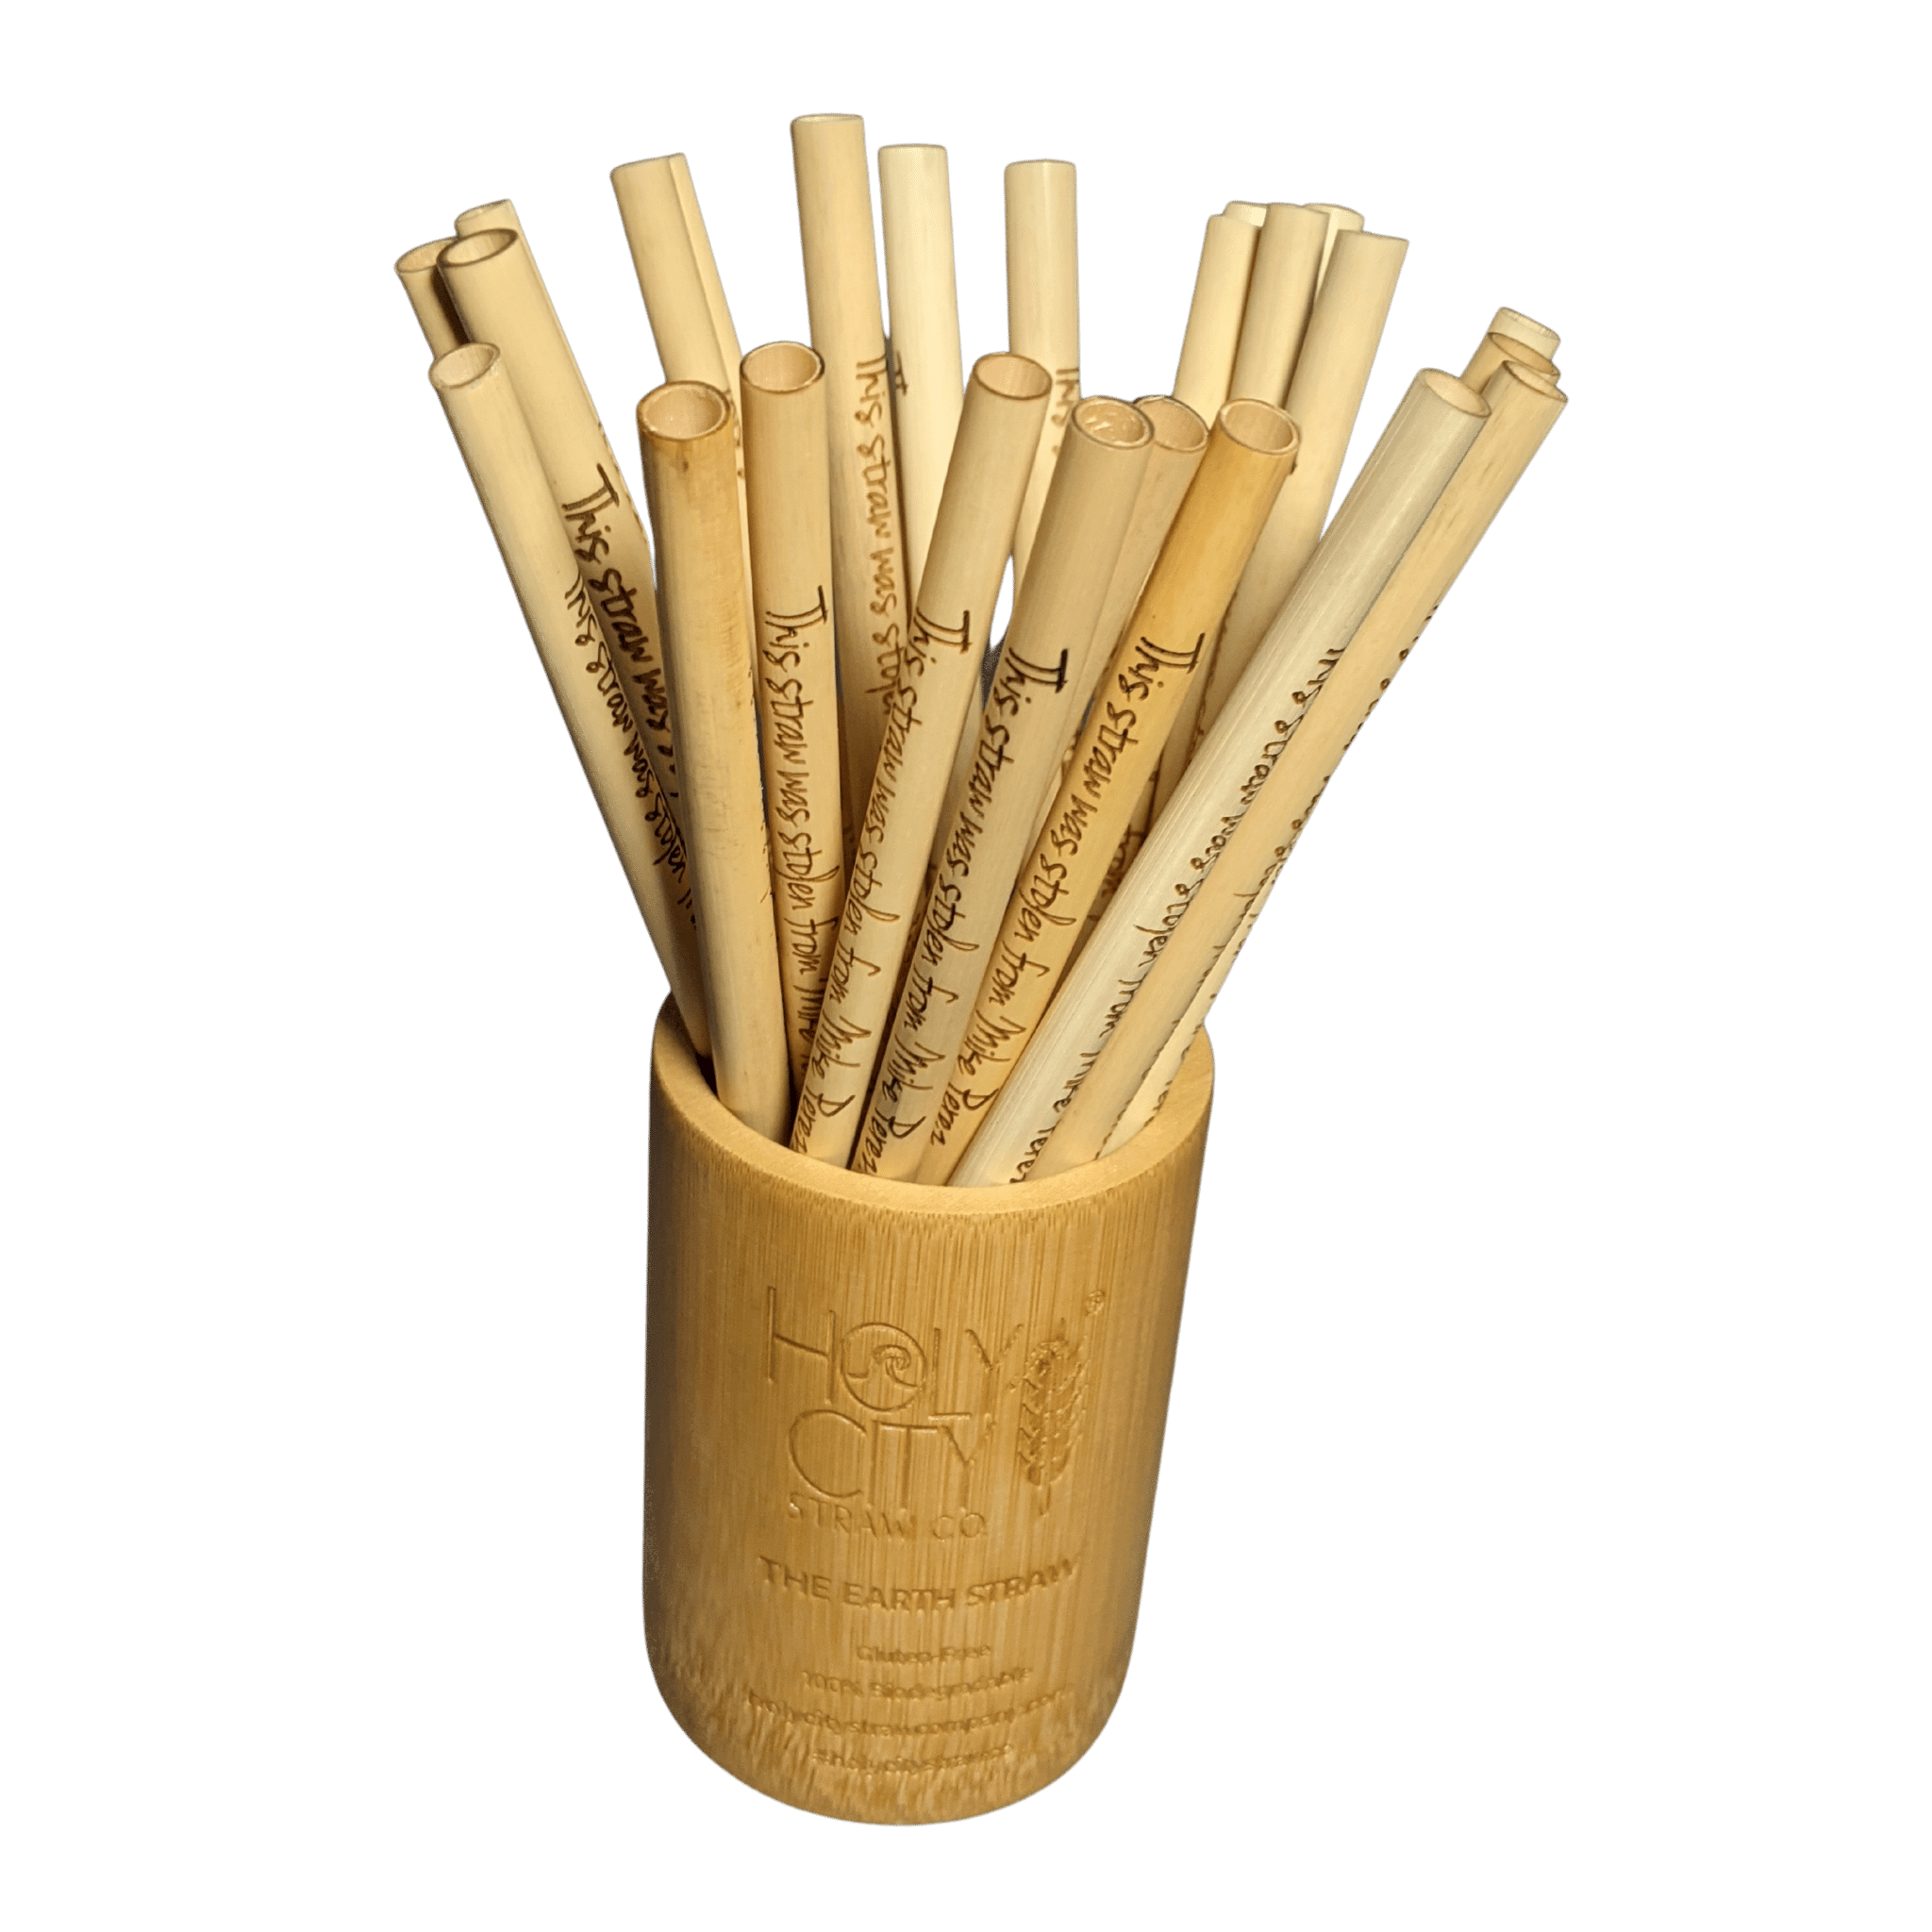 Holy City Straw Company Bamboo Straw Holder